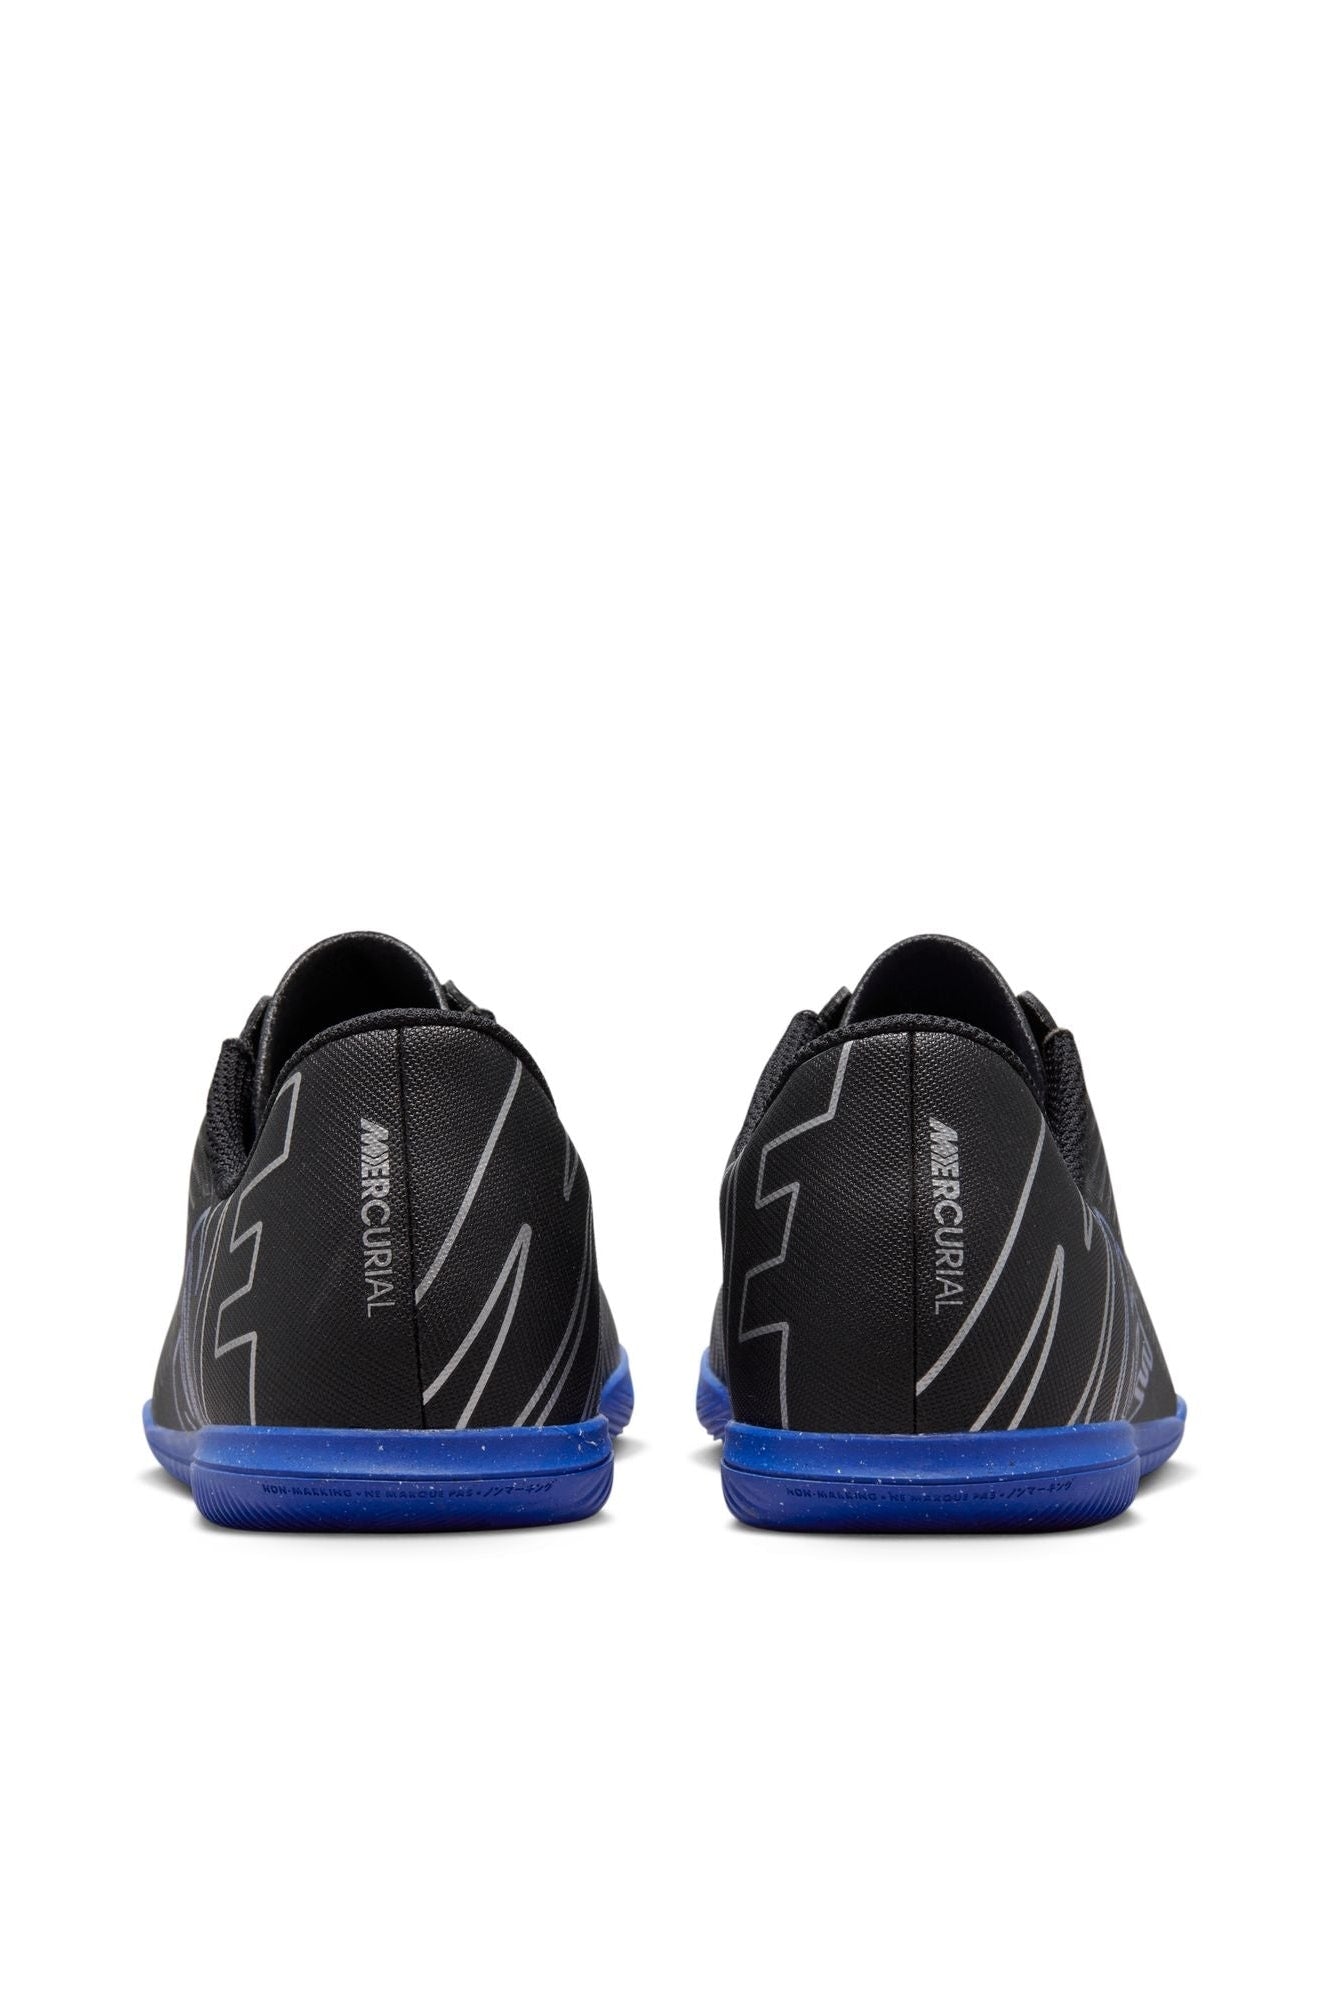 נעלי קטרגל לילדים ונוער Mercurial Vapor 15 Club בצבע שחור וכחול כהה